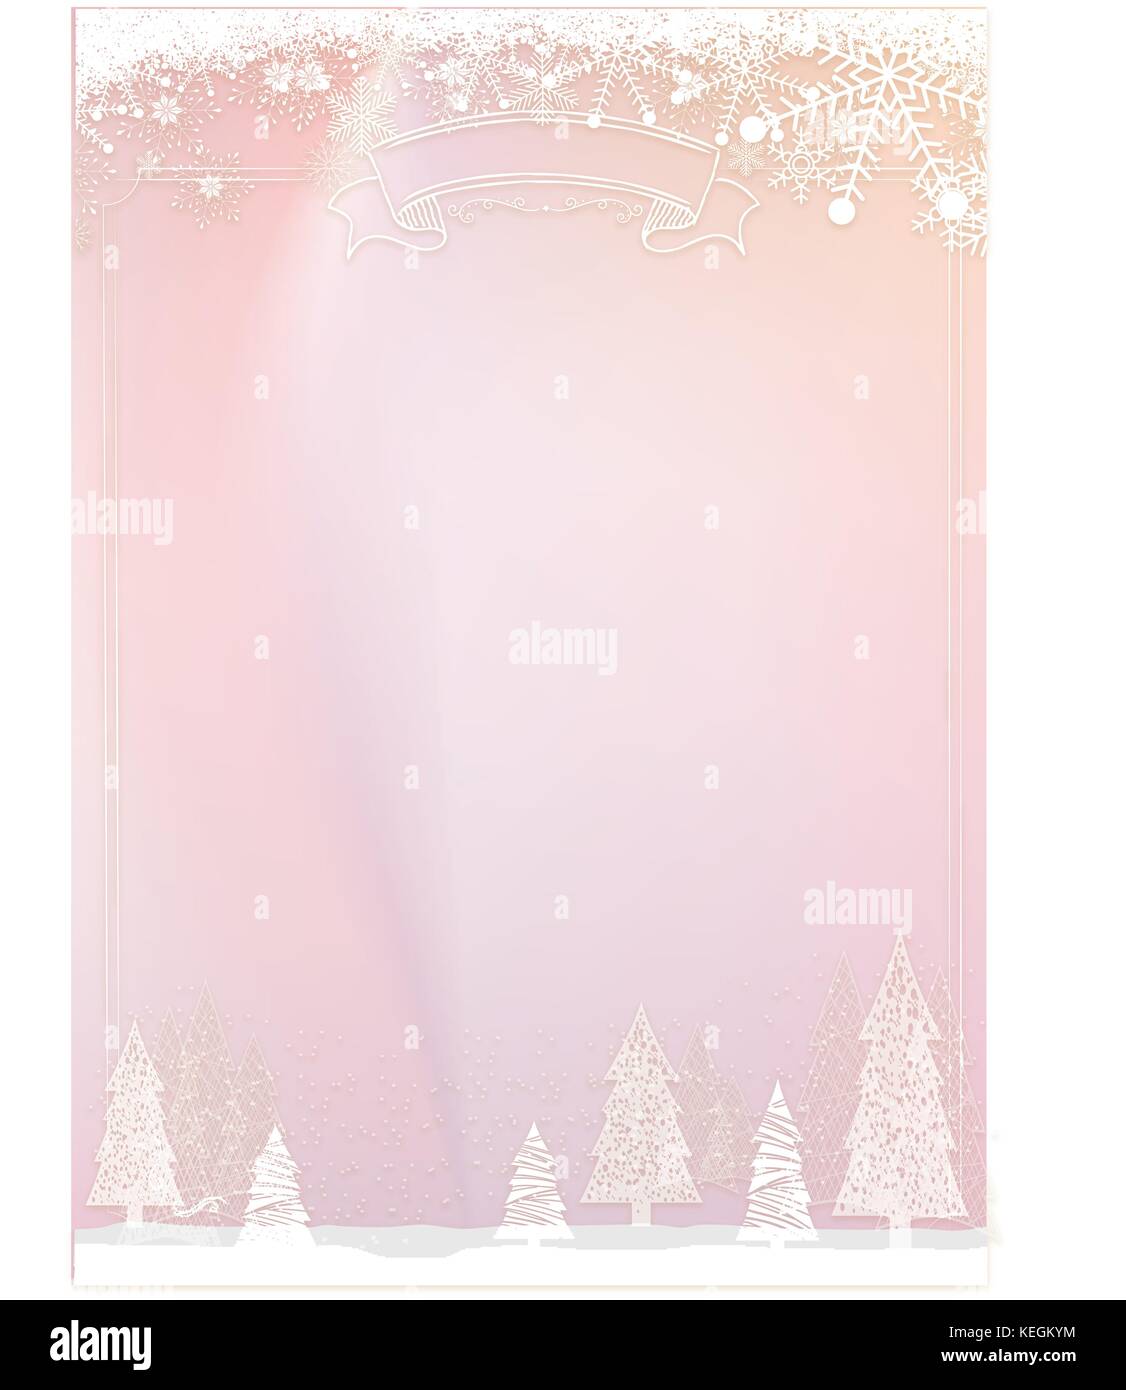 Format A3 Vertikale cafe Menü classic Pastell rosa Winter Weihnachten Hintergrund mit Schneeflocken und Xmas ball Grenze Stock Vektor